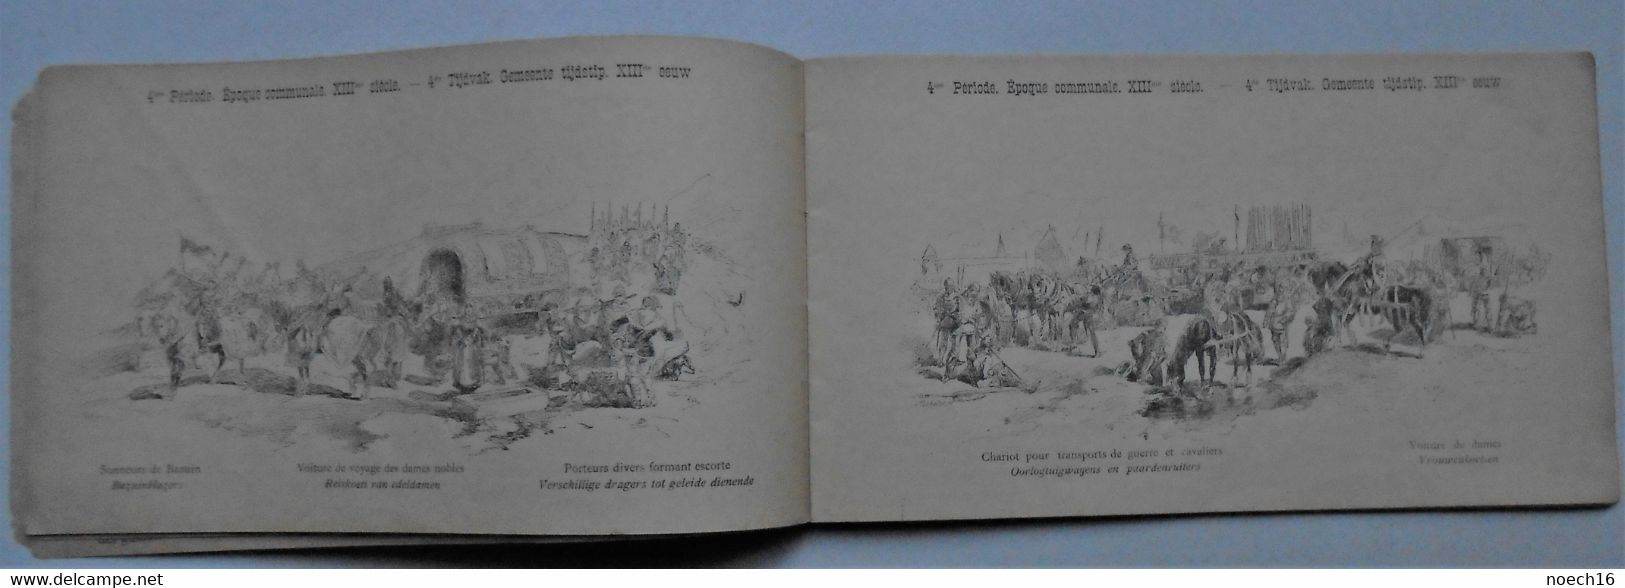 Catalogue publicité Bruxelles 1885 - Cortège Historique des Moyens de Transport